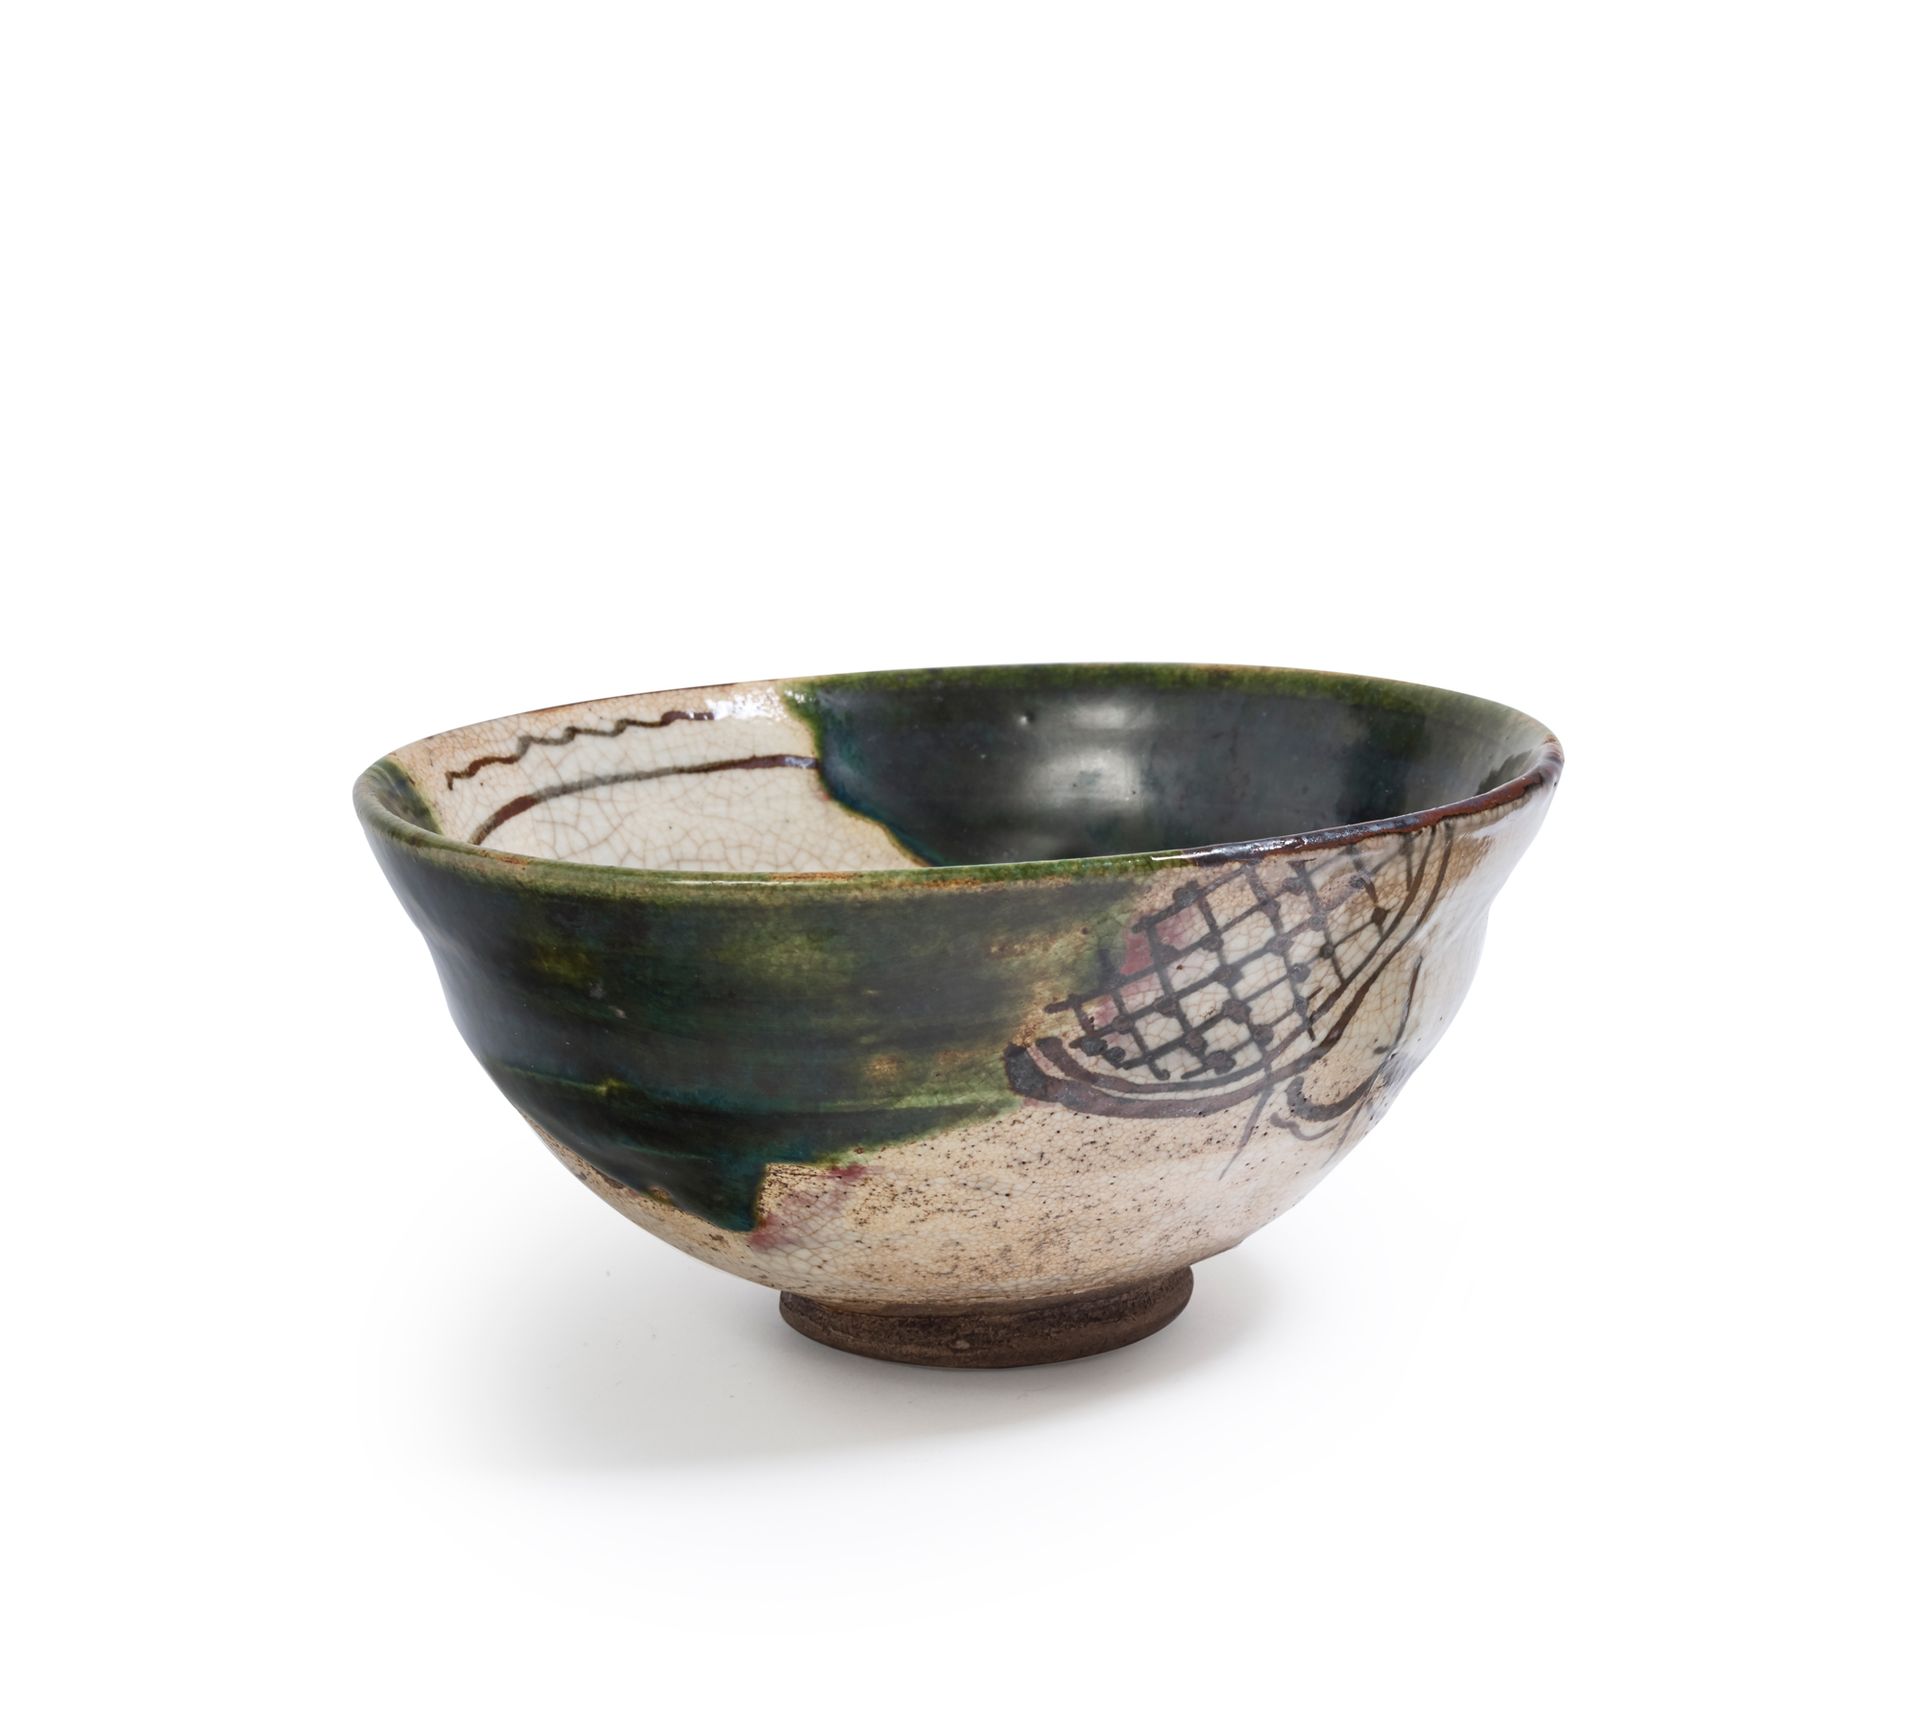 JAPON, Fours d'Oribe - XIXe siècle 
直径13.5厘米的米色和绿色釉陶茶碗，以铁褐色装饰格子和树篱，内部装饰有枫叶和波浪。